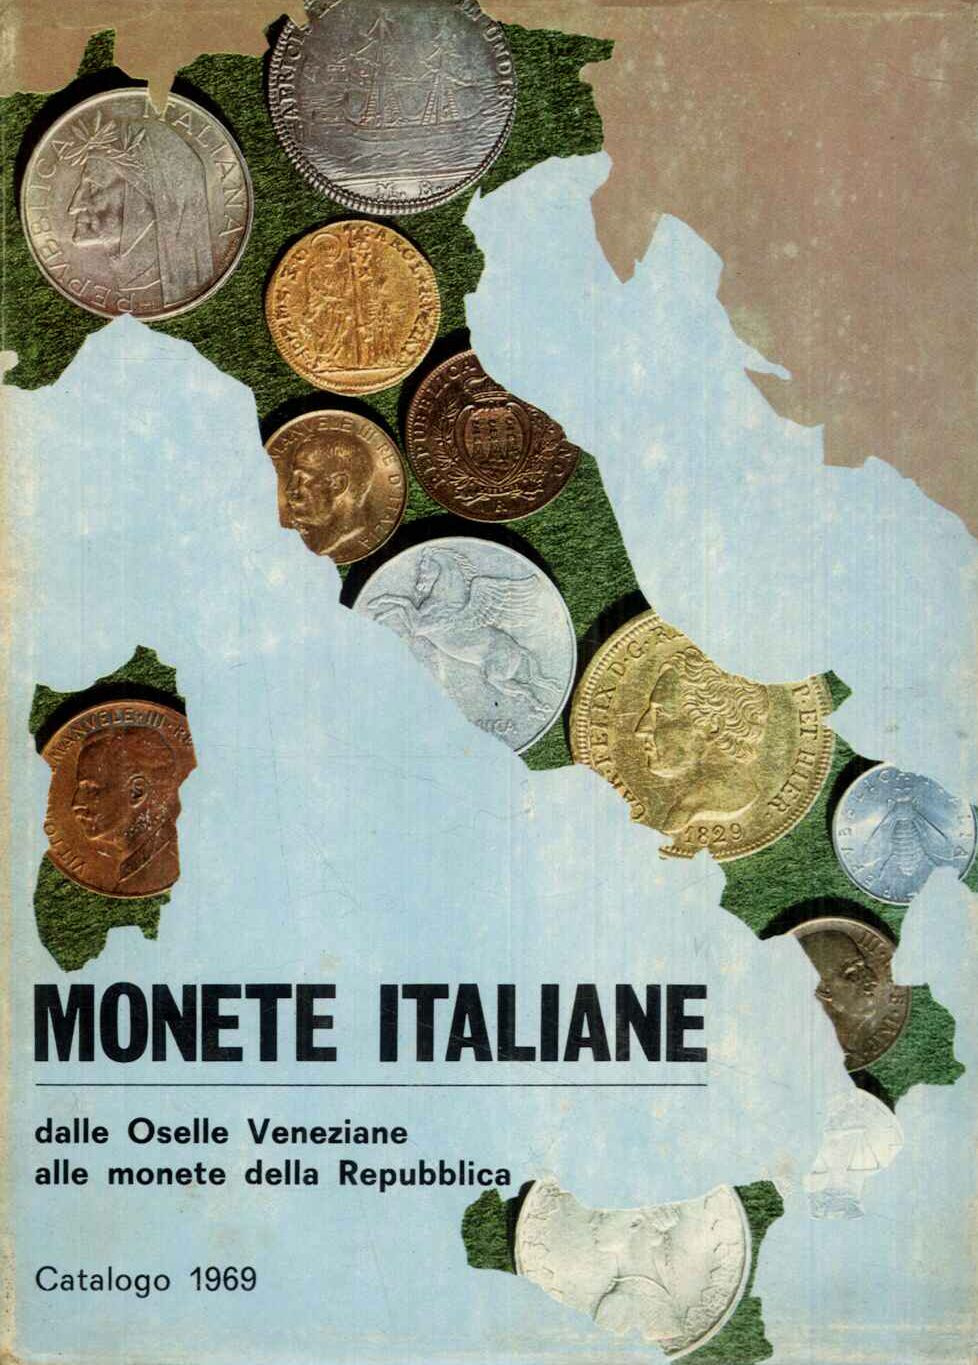 Monete Italiane. Dalle Oselle veneziane alle monete della Repubblica